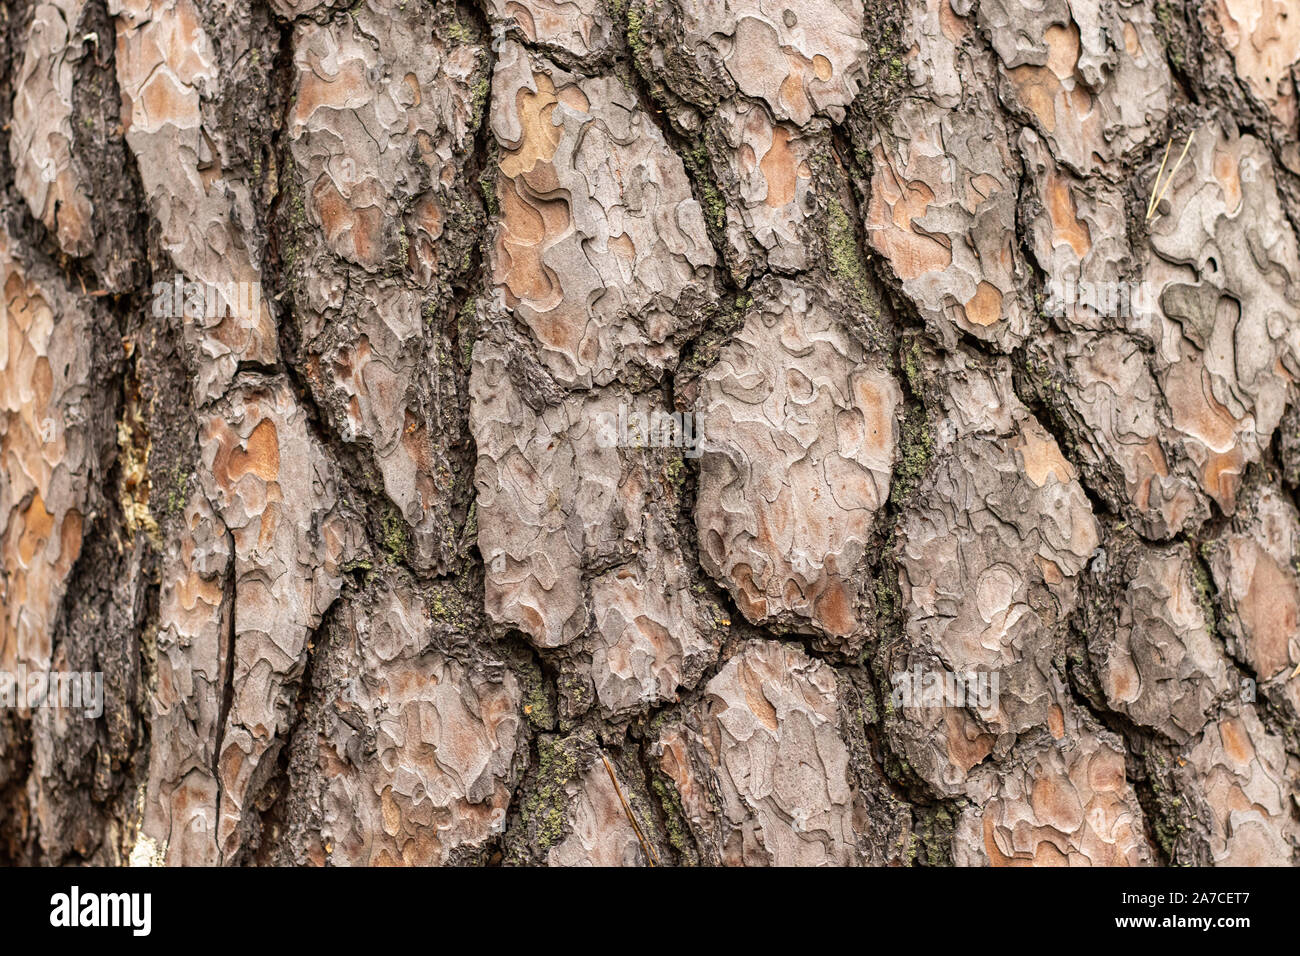 textur von pine tree bark mit rissen stockfotografie - alamy